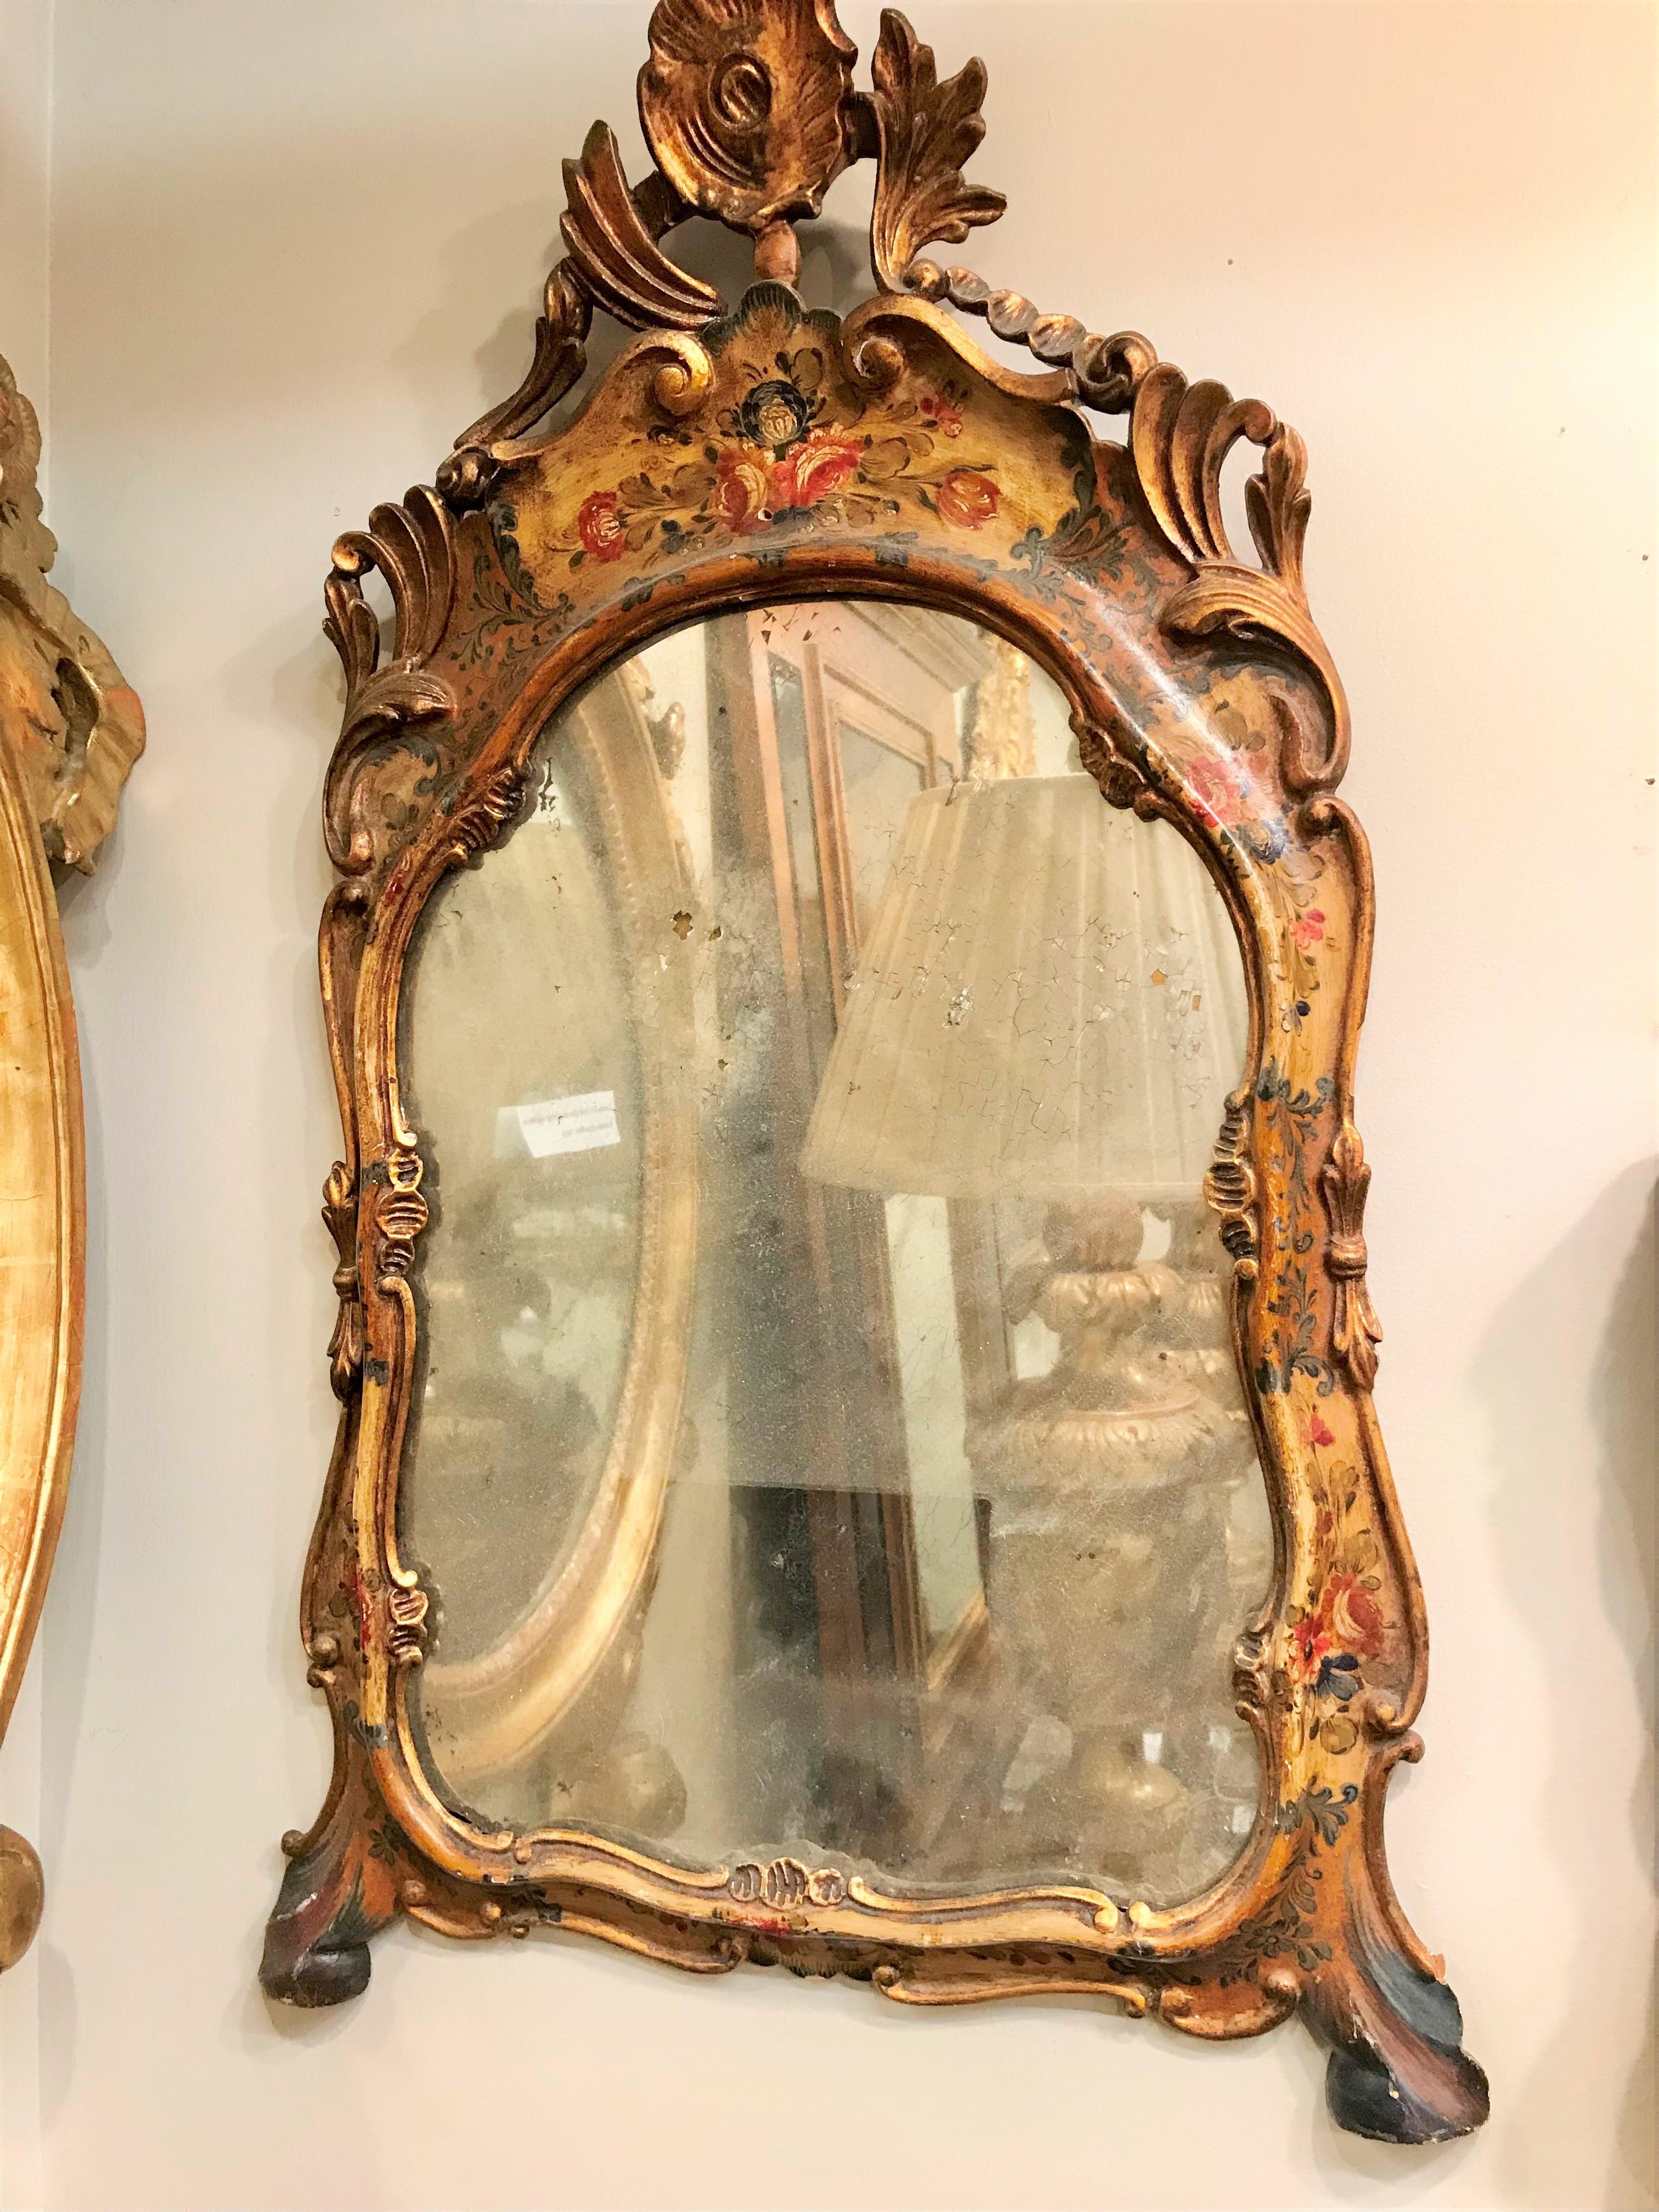 Un miroir vénitien à décor floral et parcellaire doré . La plaque de mercure probable dans la désintégration et la dégradation du charme . La peinture avec la saleté et la crasse